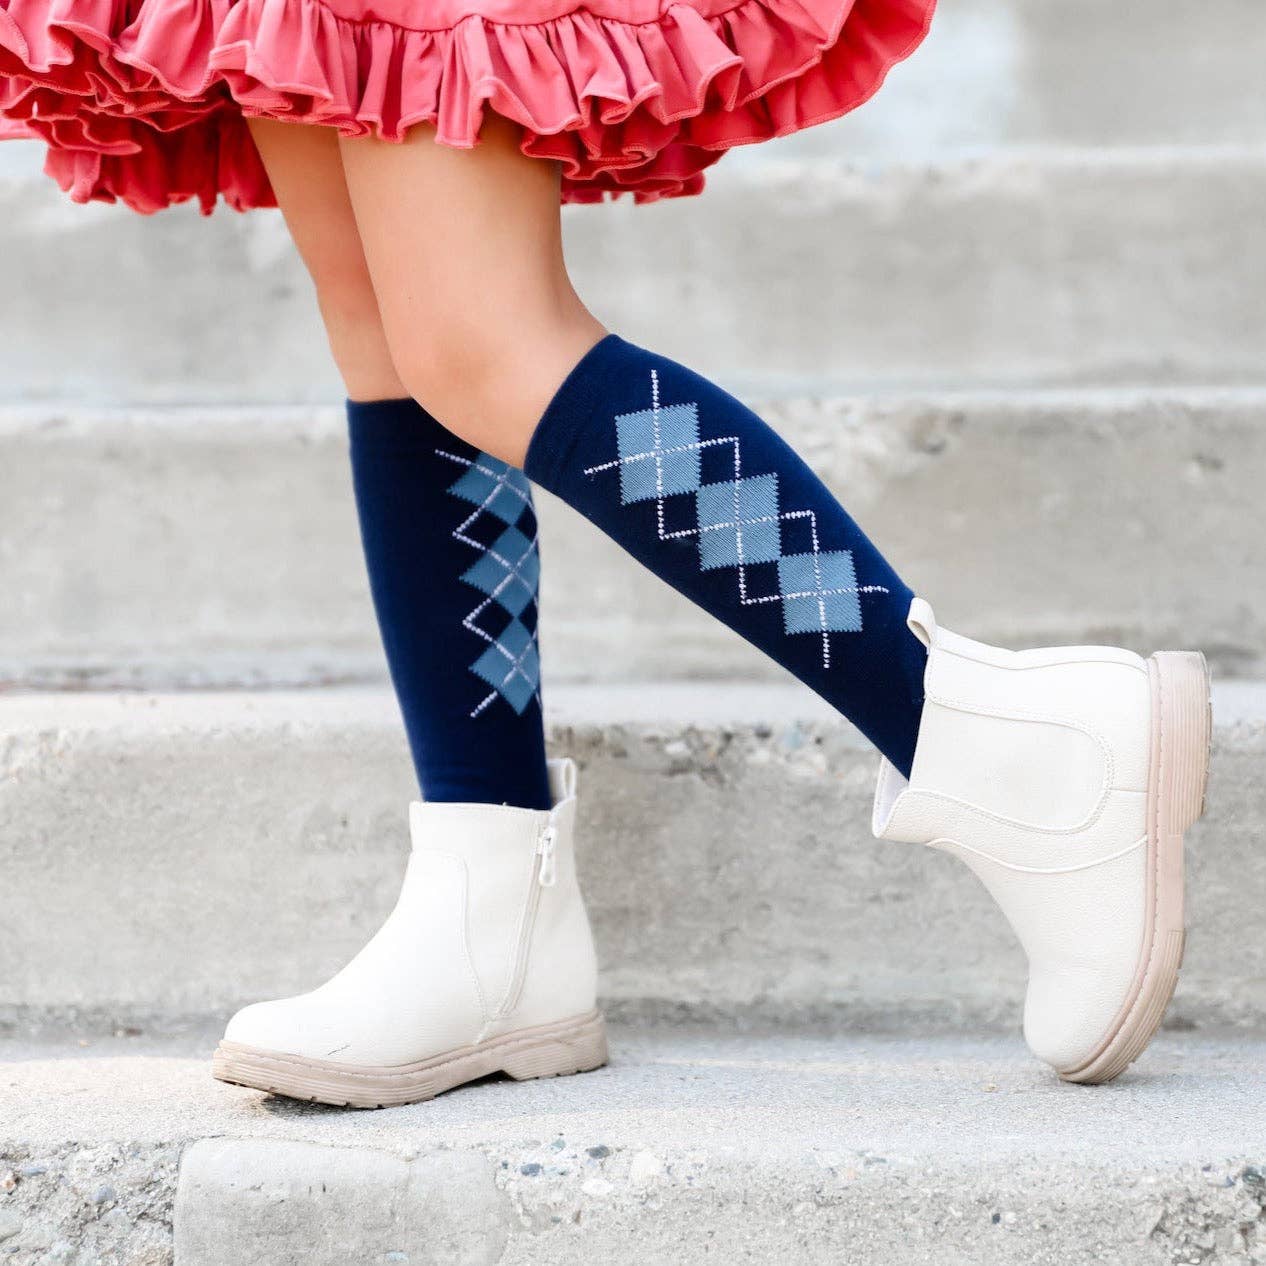 Little Stocking Co. - School Girl Knee High Sock 3-Pack: 4-6 YEARS